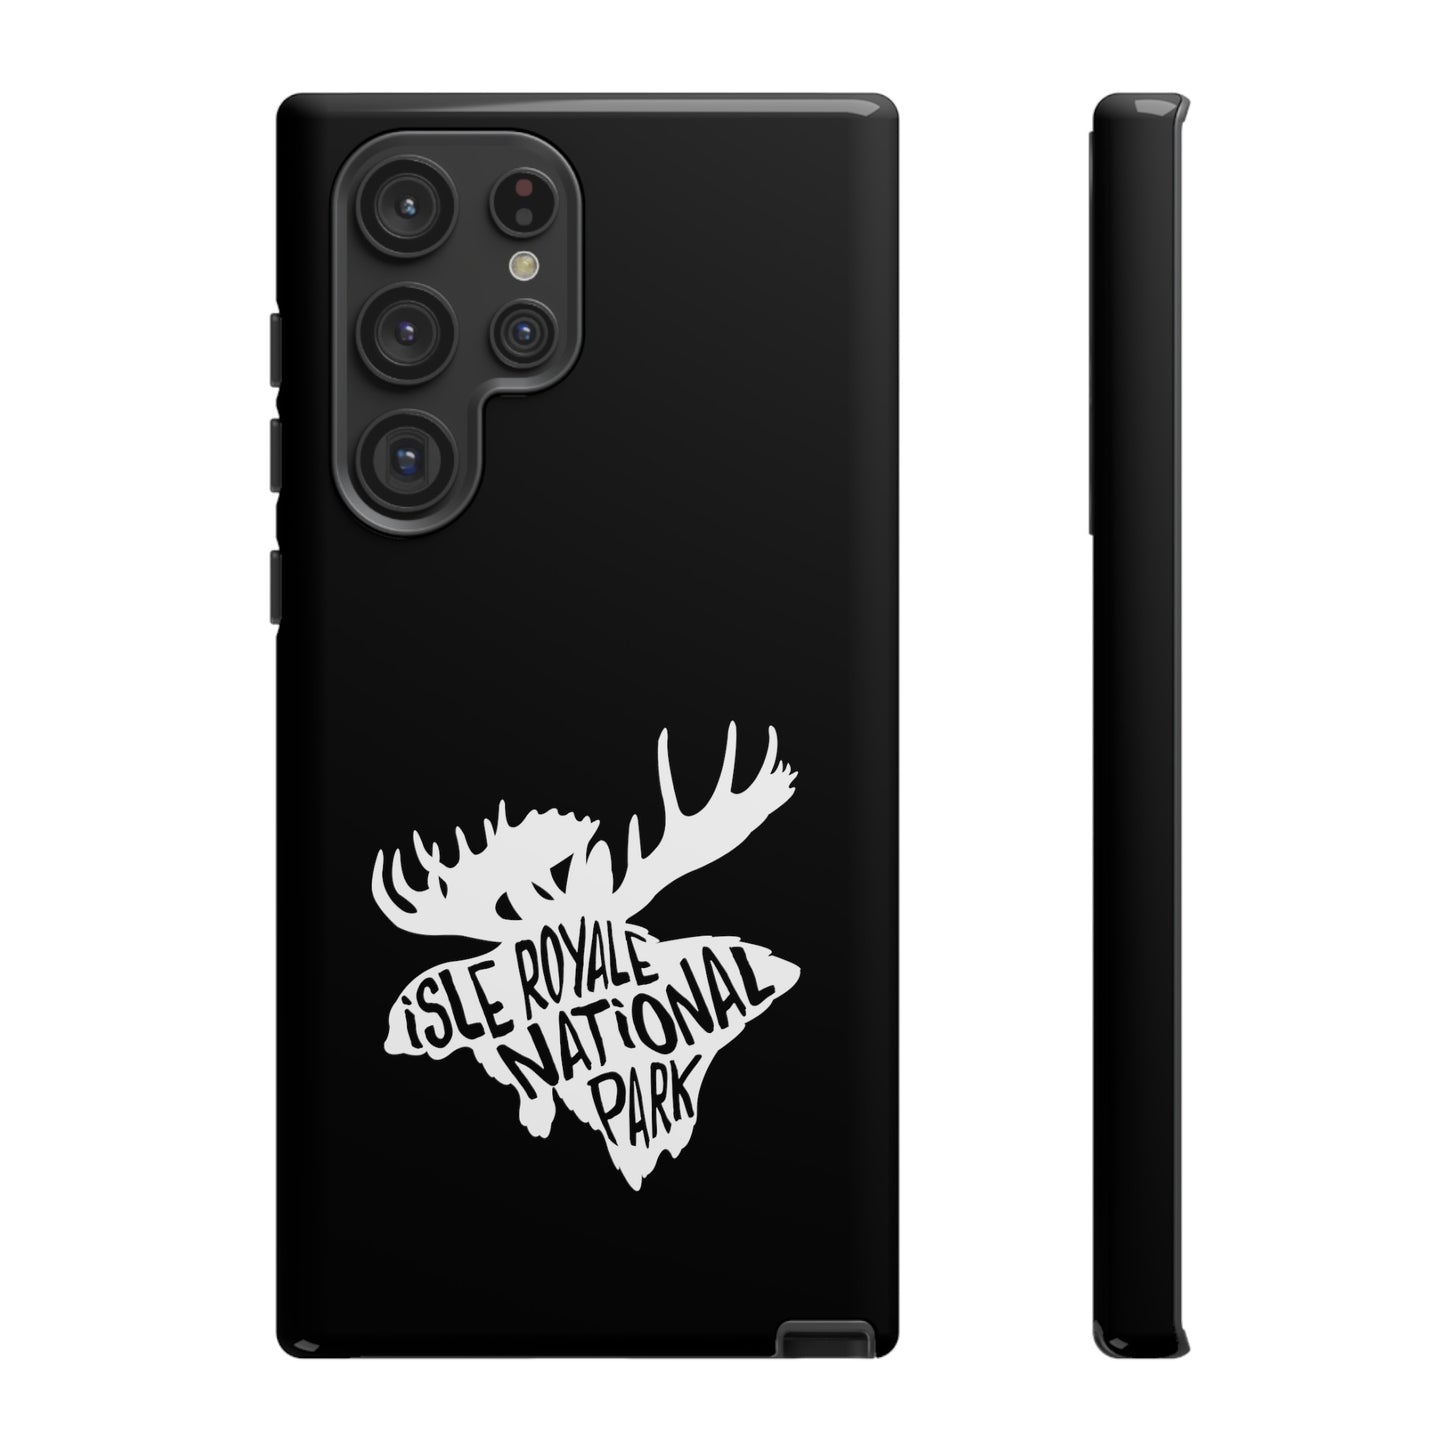 Isle Royale National Park Phone Case - Moose Design